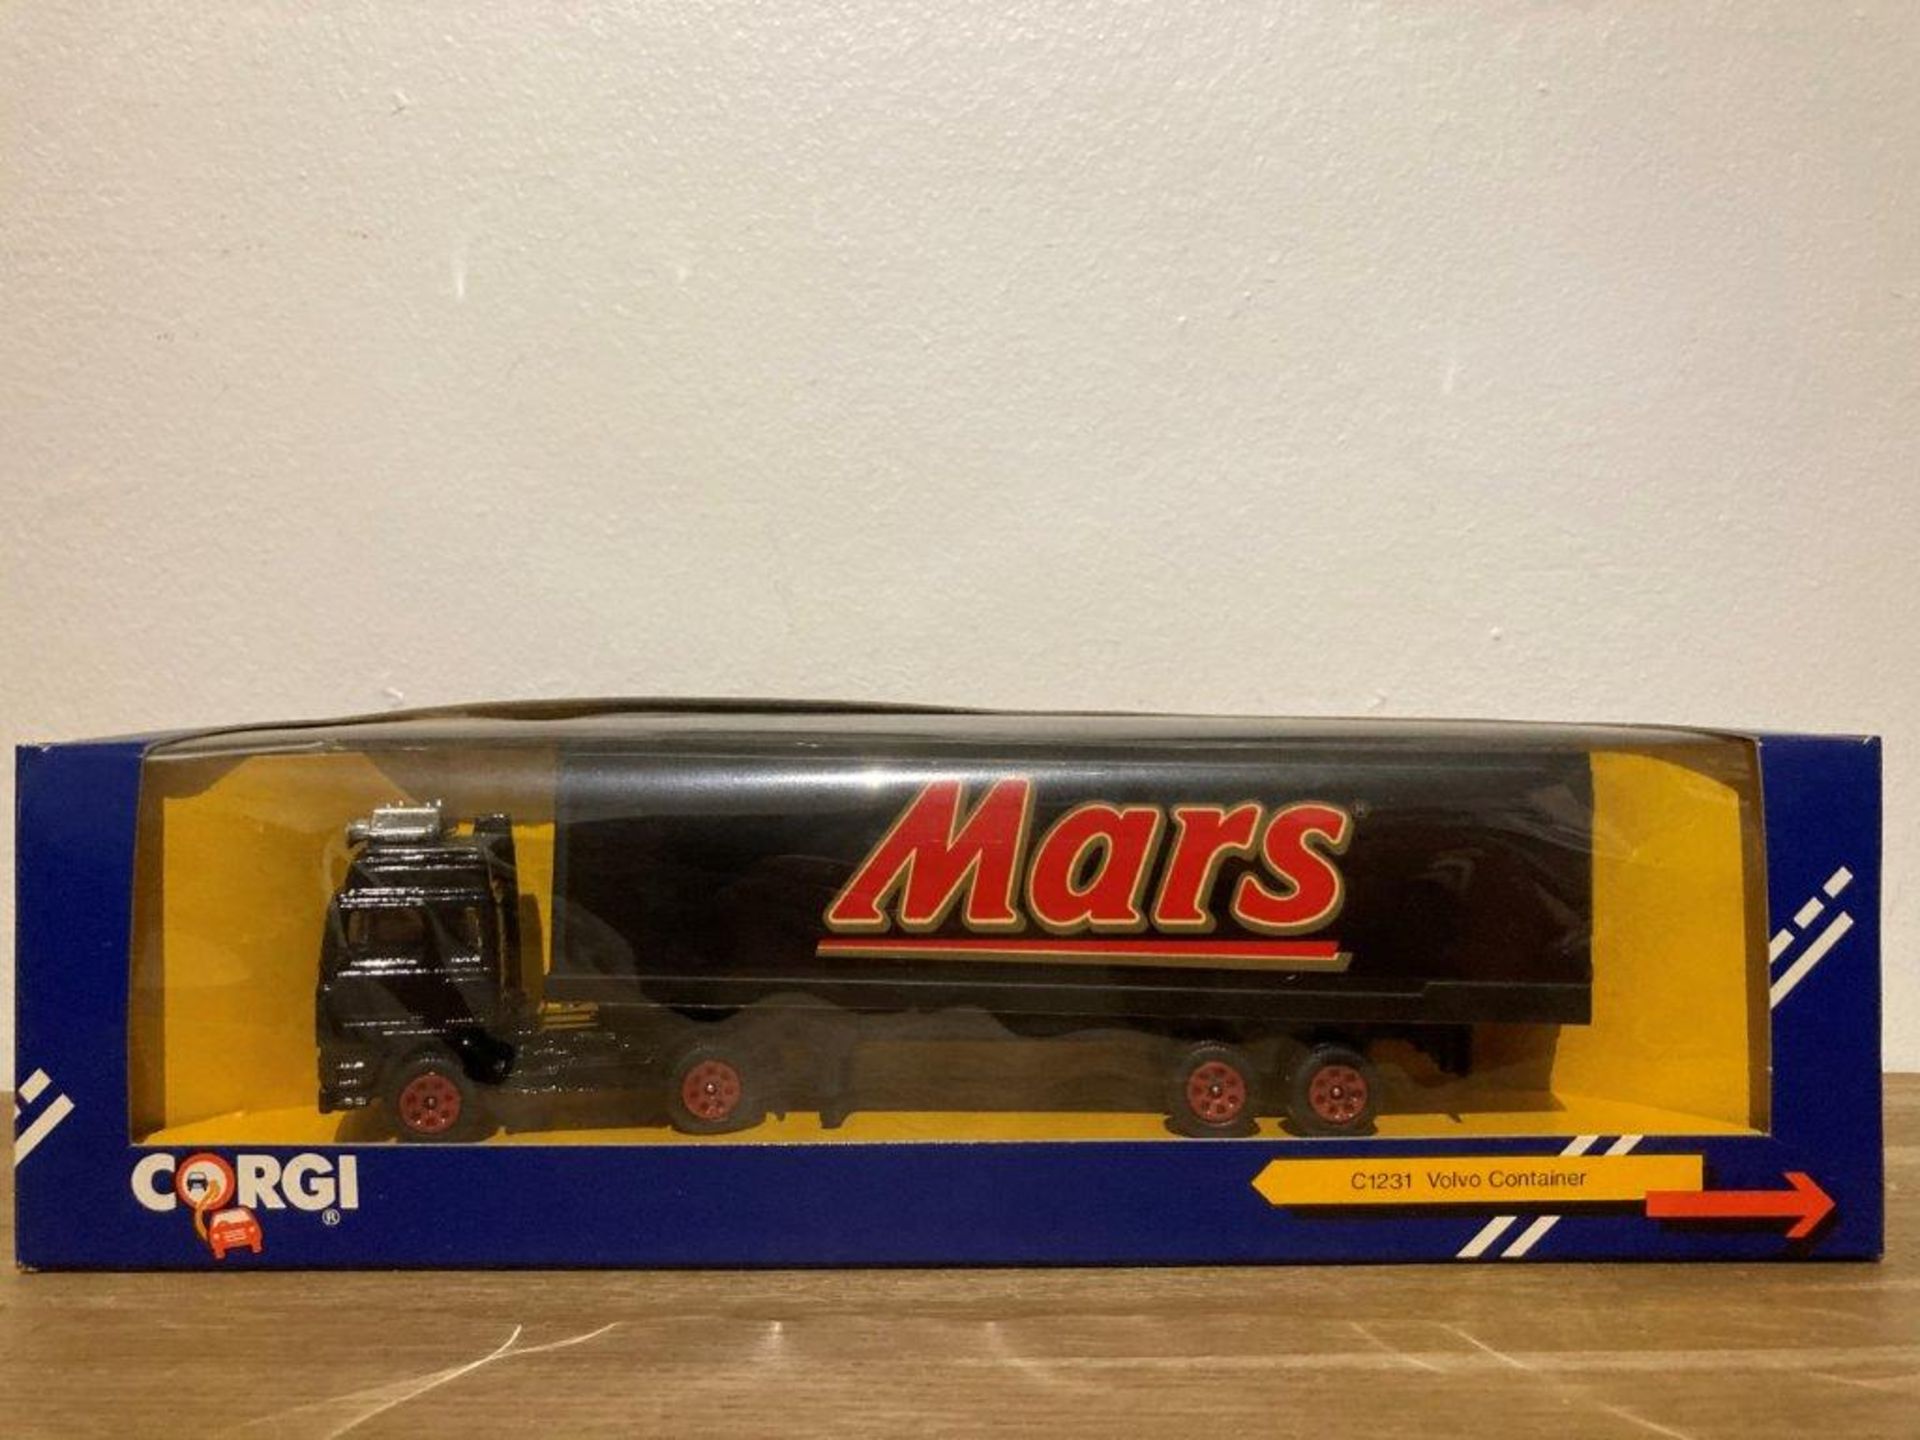 Corgi Mars Volvo Container - C1231